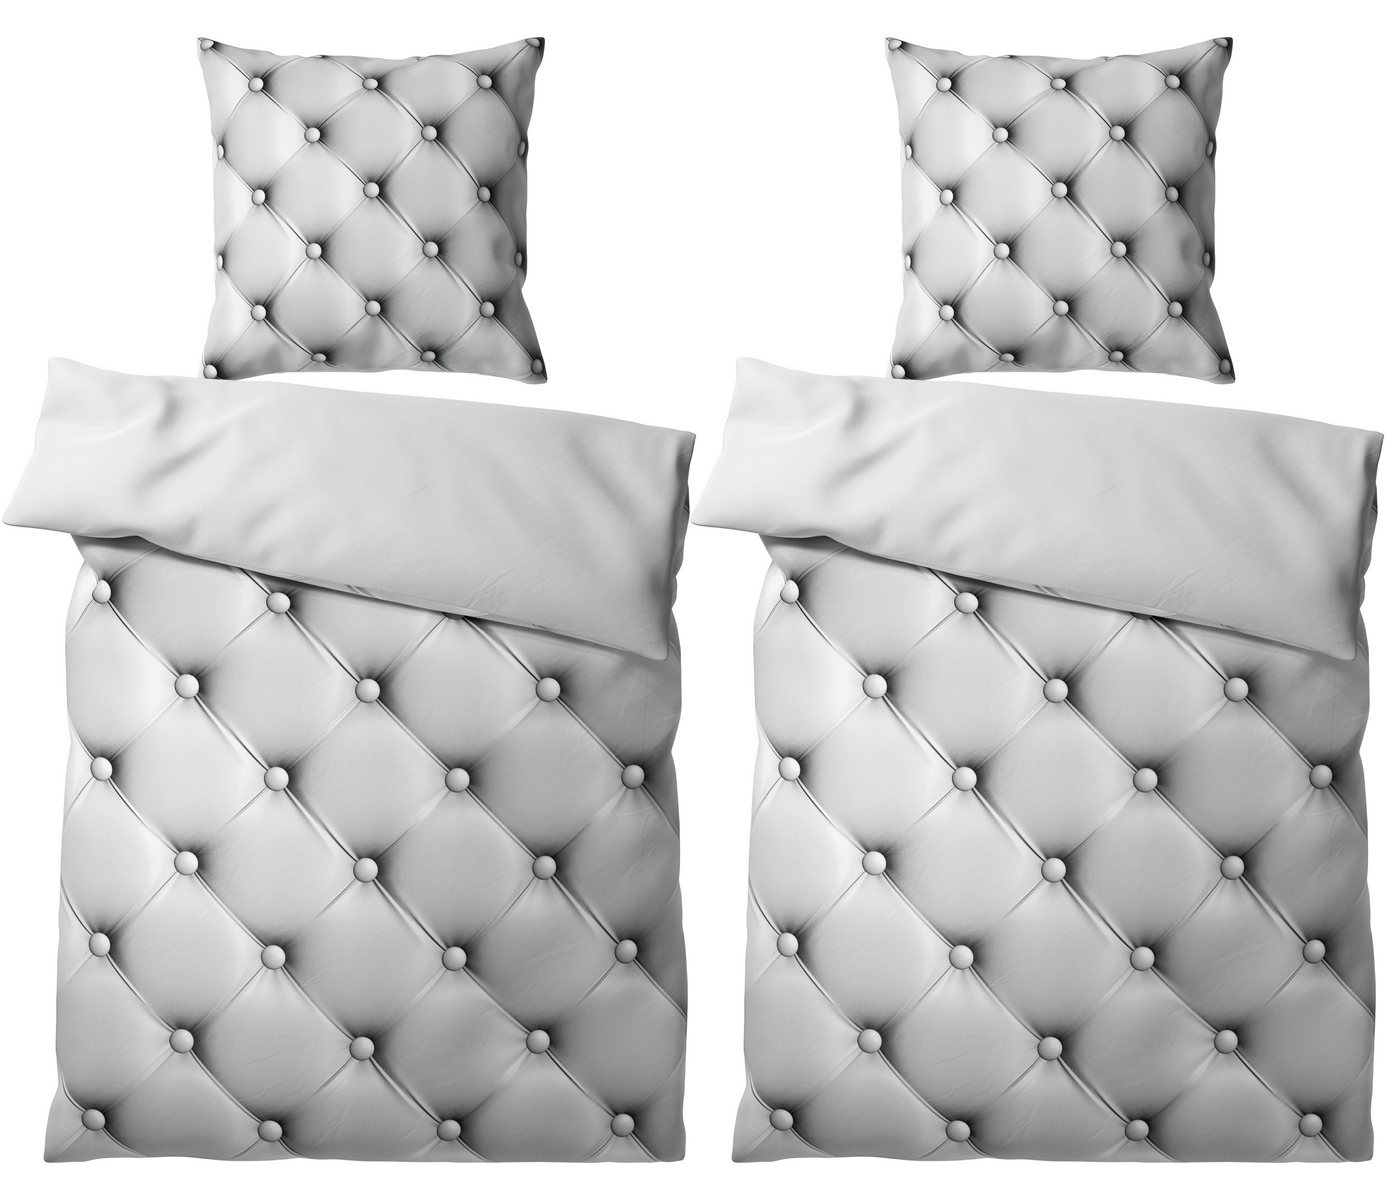 Bettwäsche Comfort 135x200 cm, Bettbezug und Kissenbezug, Sanilo, Baumwolle, 4 teilig von Sanilo